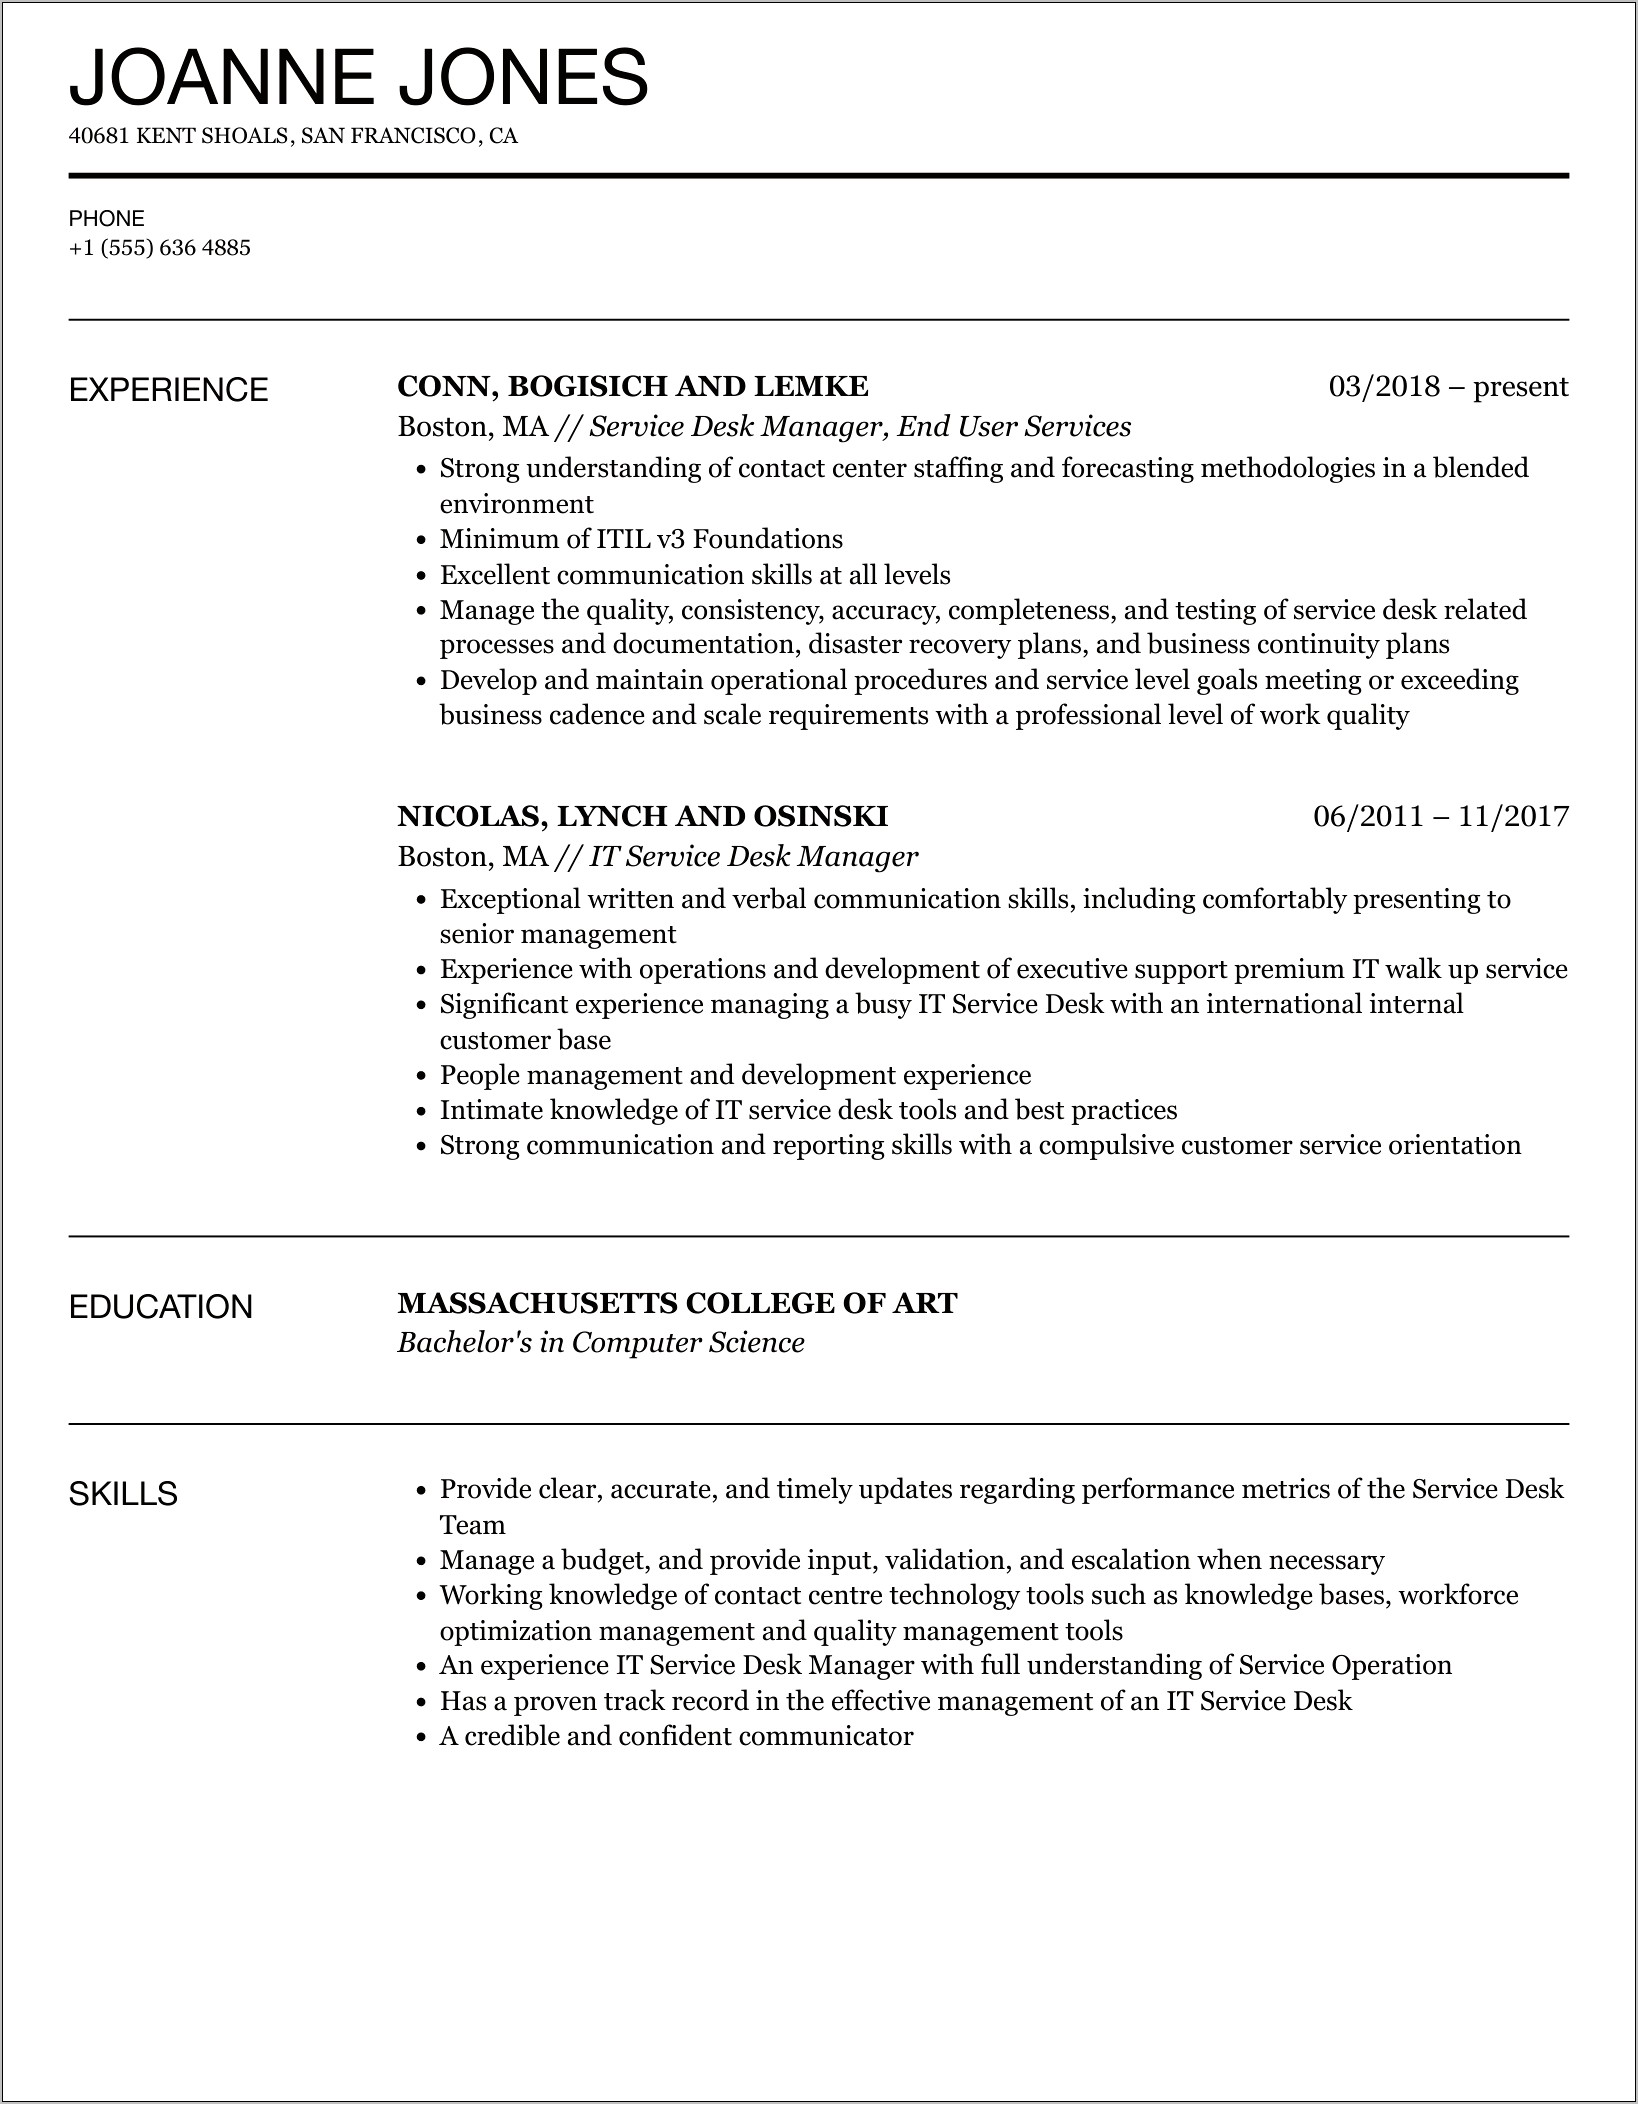 Sample Service Desk Manager Resume